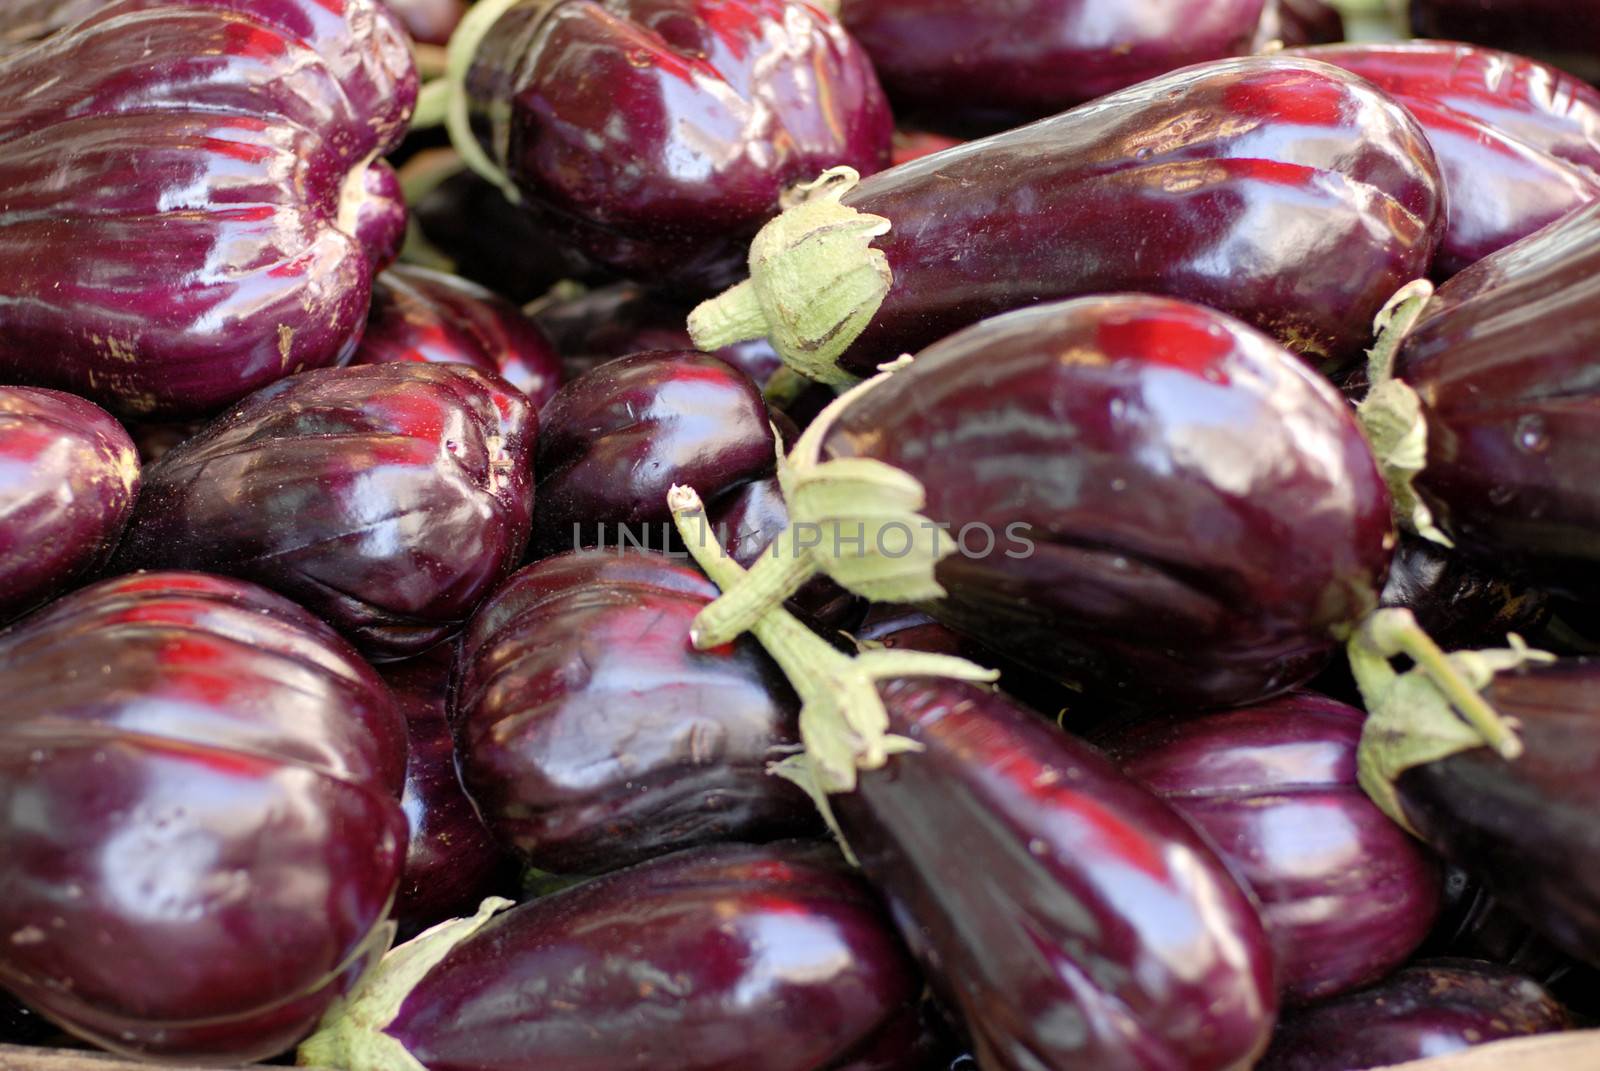 Eggplants at a market stall, closeup shot